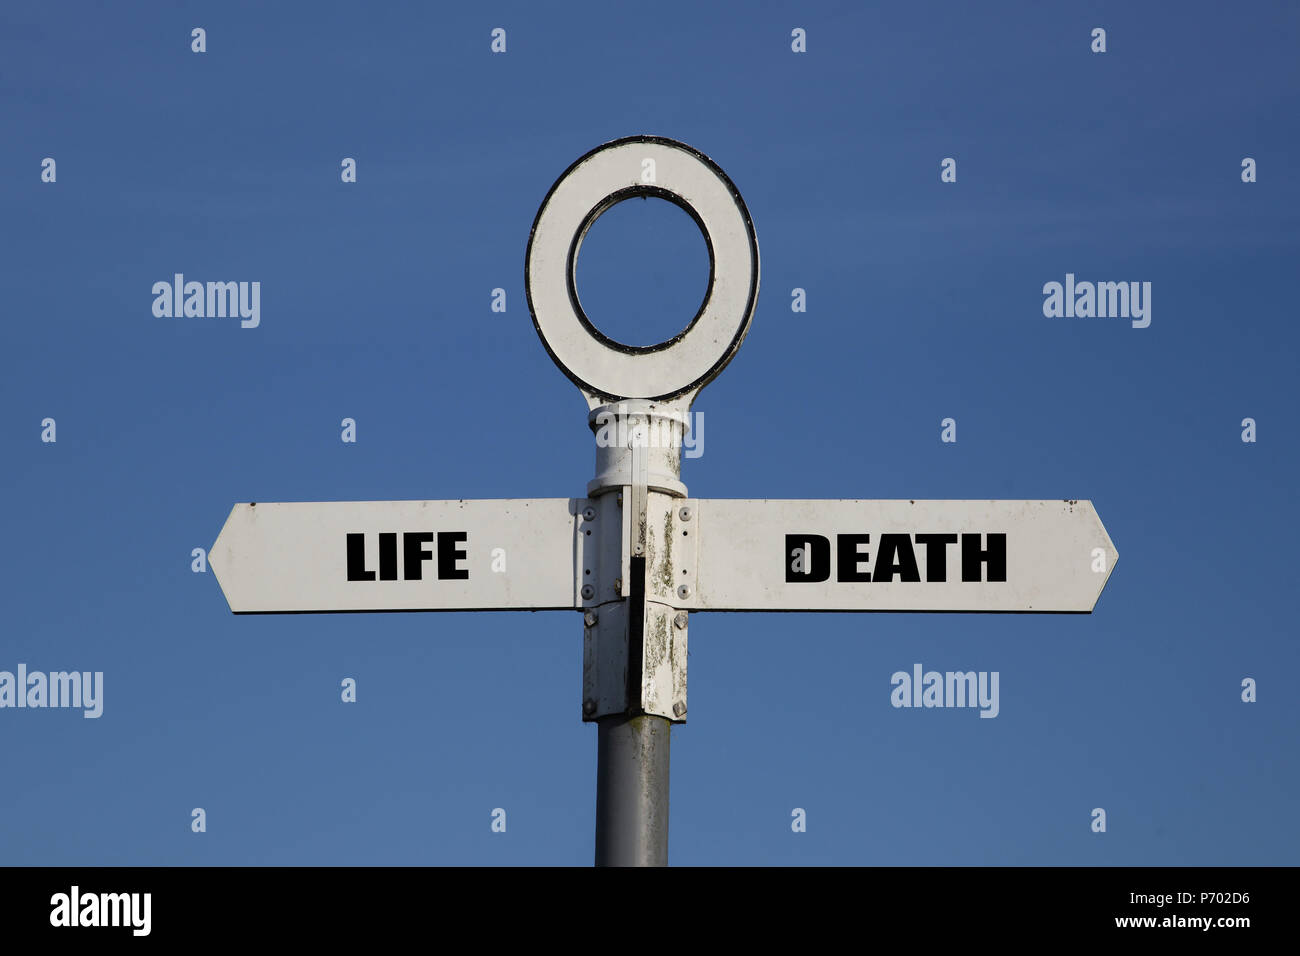 Alte Straße mit Leben und Tod zeigen in entgegengesetzte Richtungen vor blauem Himmel Stockfoto